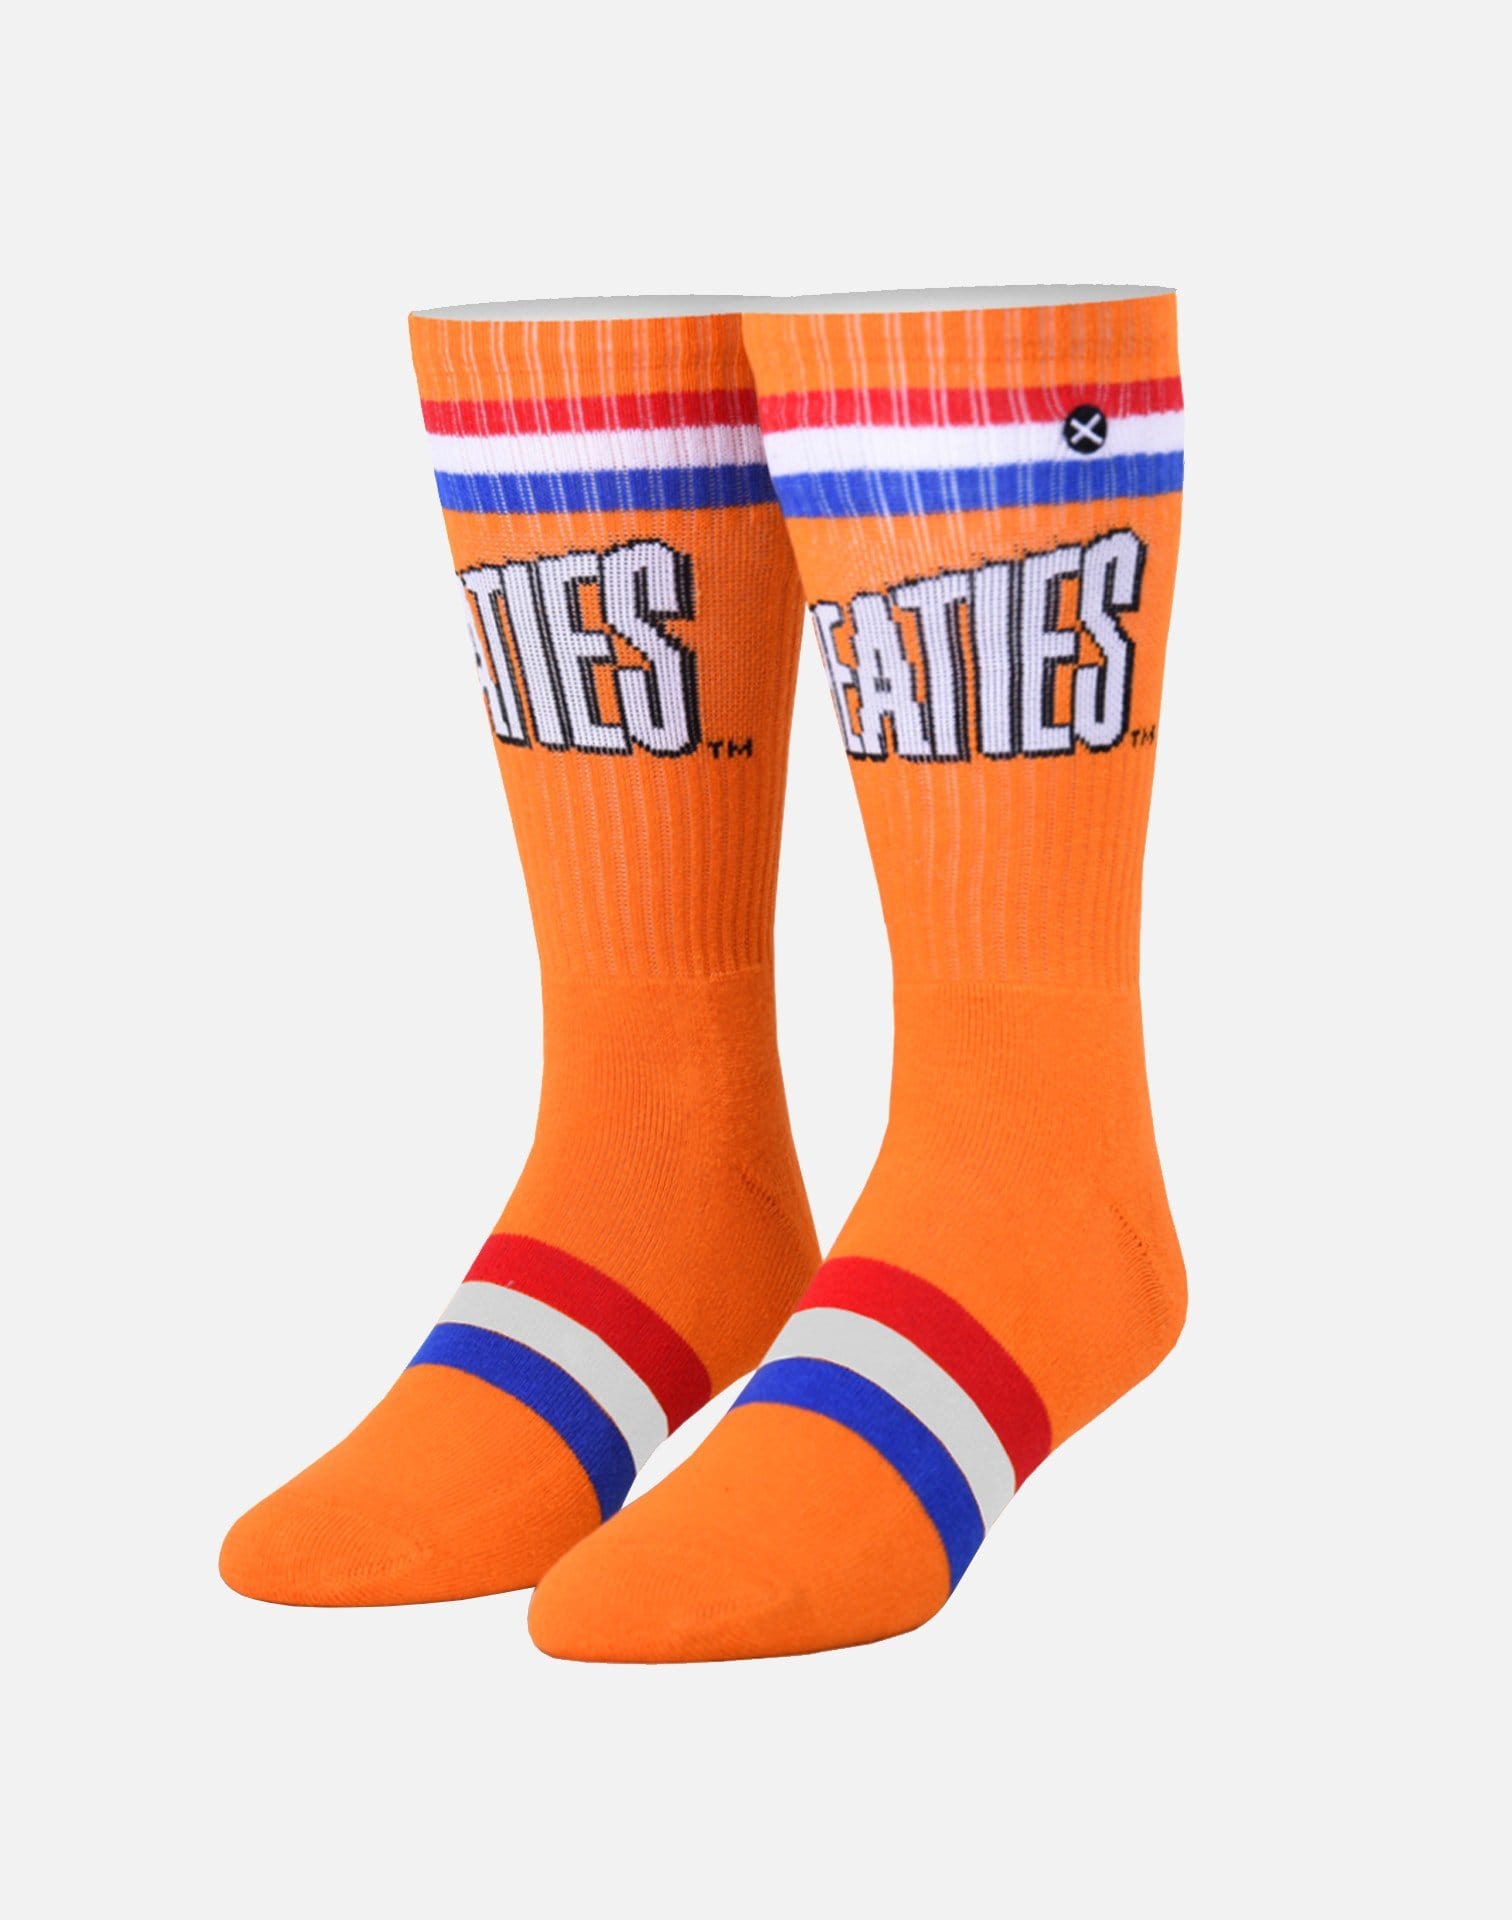 Odd Sox Wheaties Knit Crew Socks